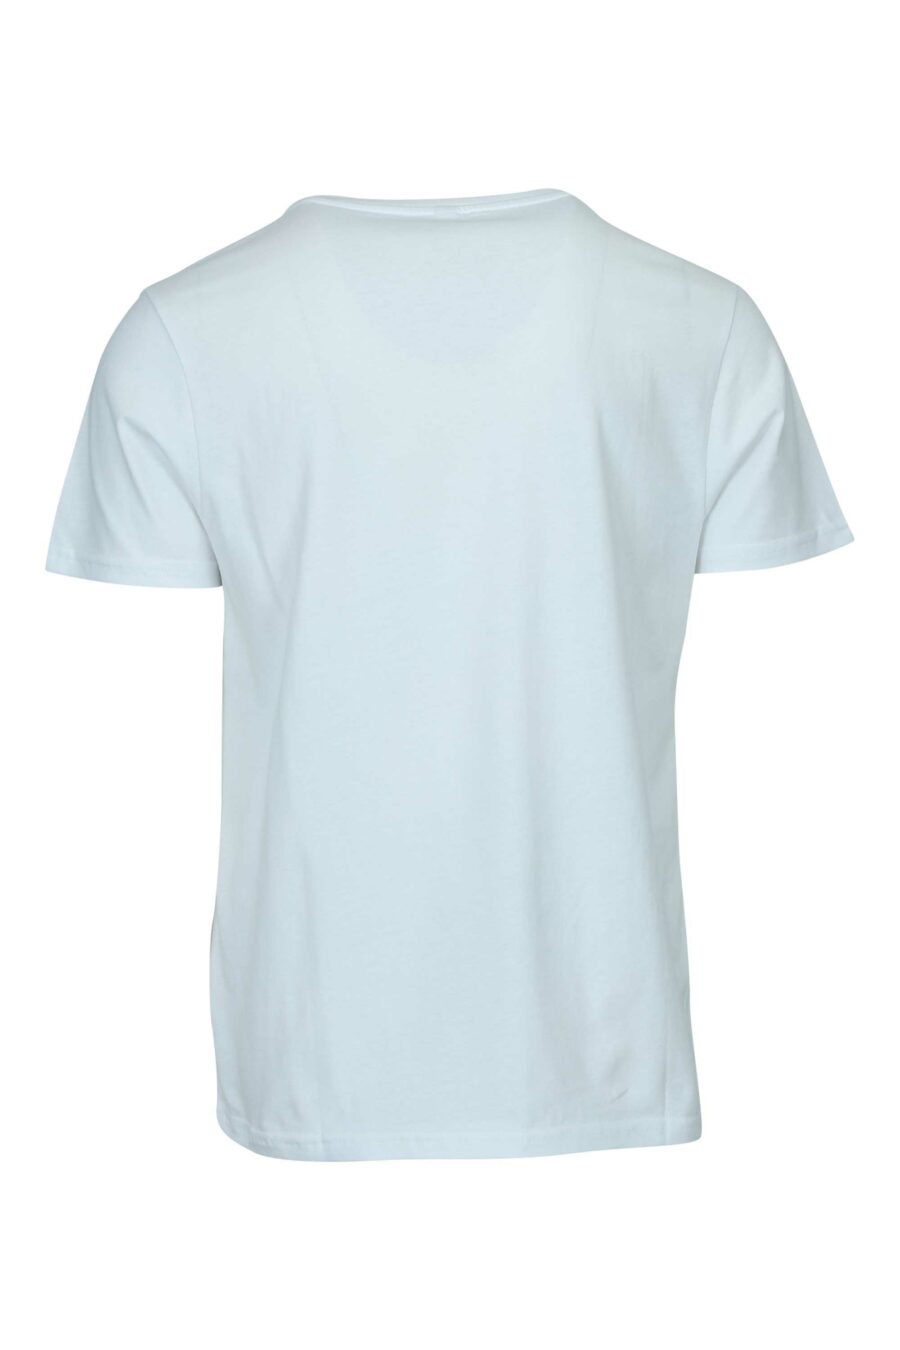 T-shirt blanc avec logo en caoutchouc monochrome sur les épaules - 667113671932 1